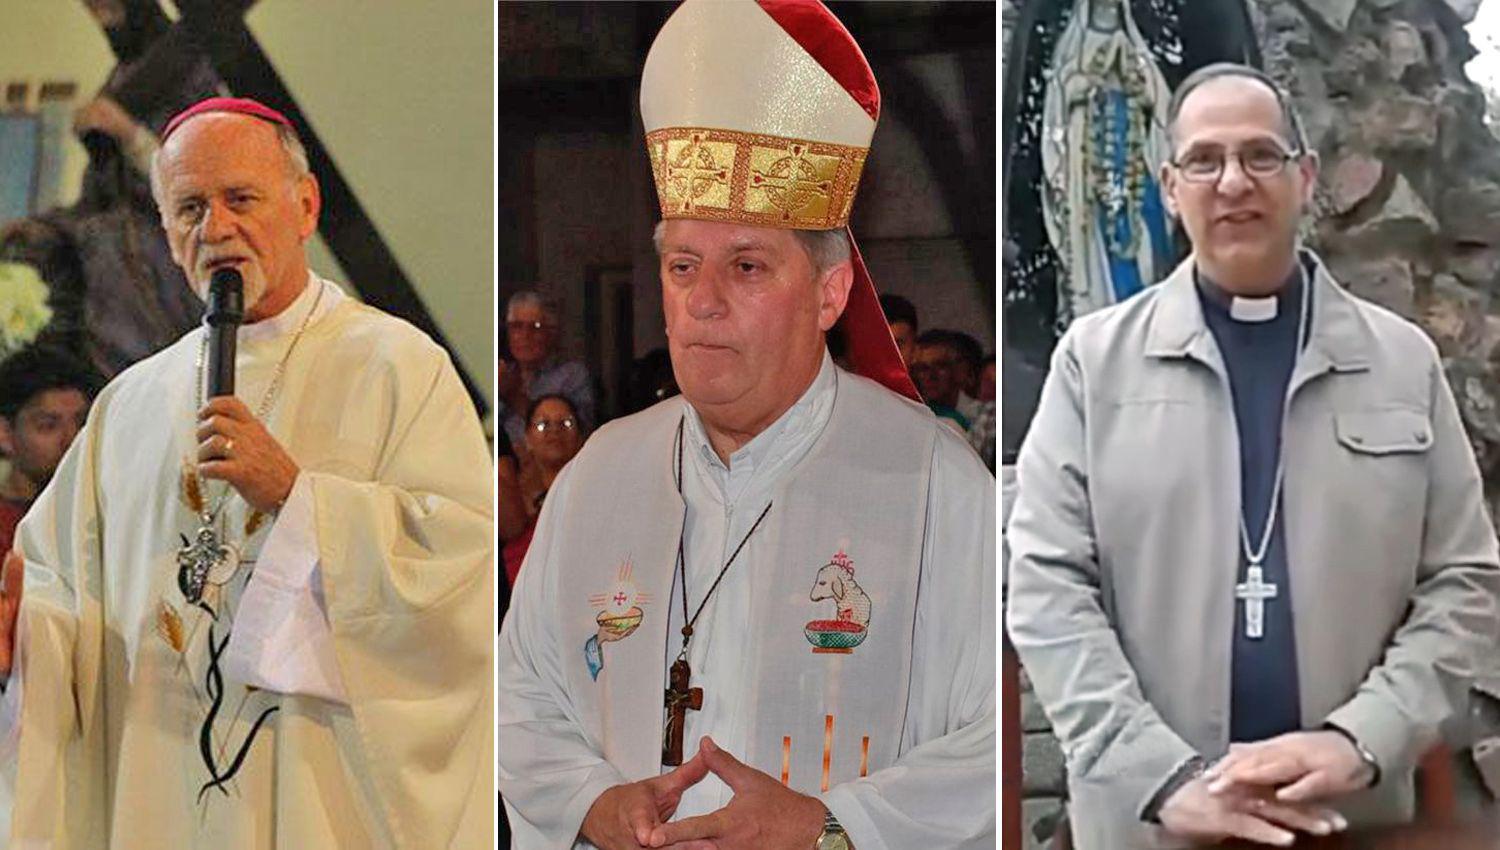 Los obispos de la provincia pidieron por los padres enfermos sin trabajo preocupados y solos